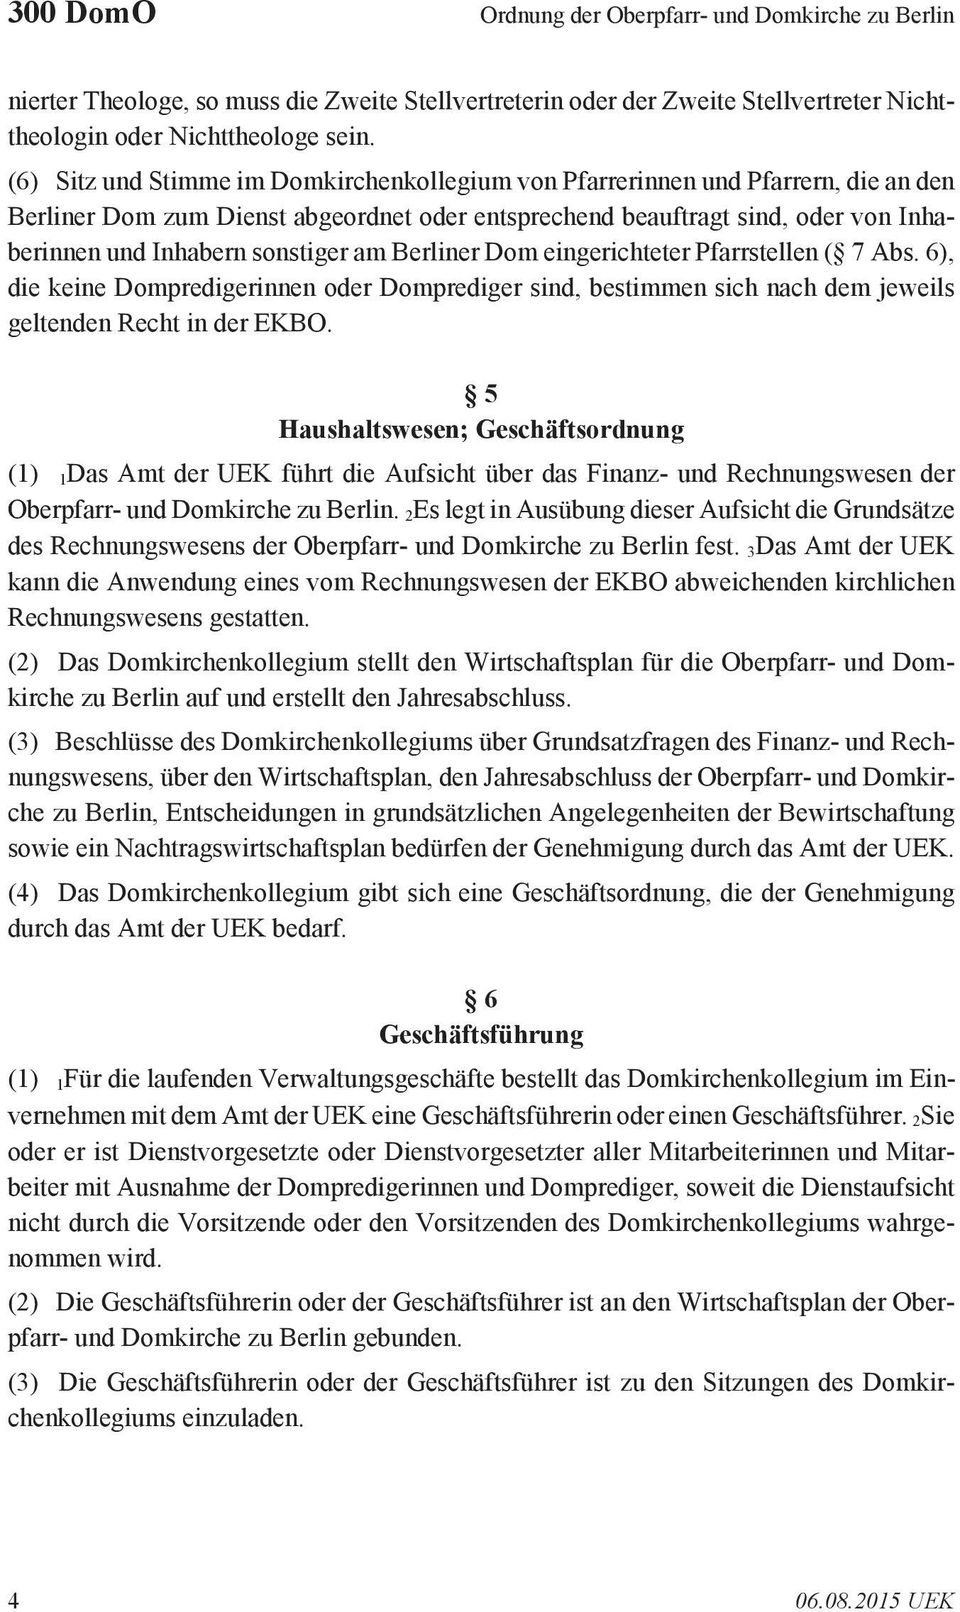 am Berliner Dom eingerichteter Pfarrstellen ( 7 Abs. 6), die keine Dompredigerinnen oder Domprediger sind, bestimmen sich nach dem jeweils geltenden Recht in der EKBO.